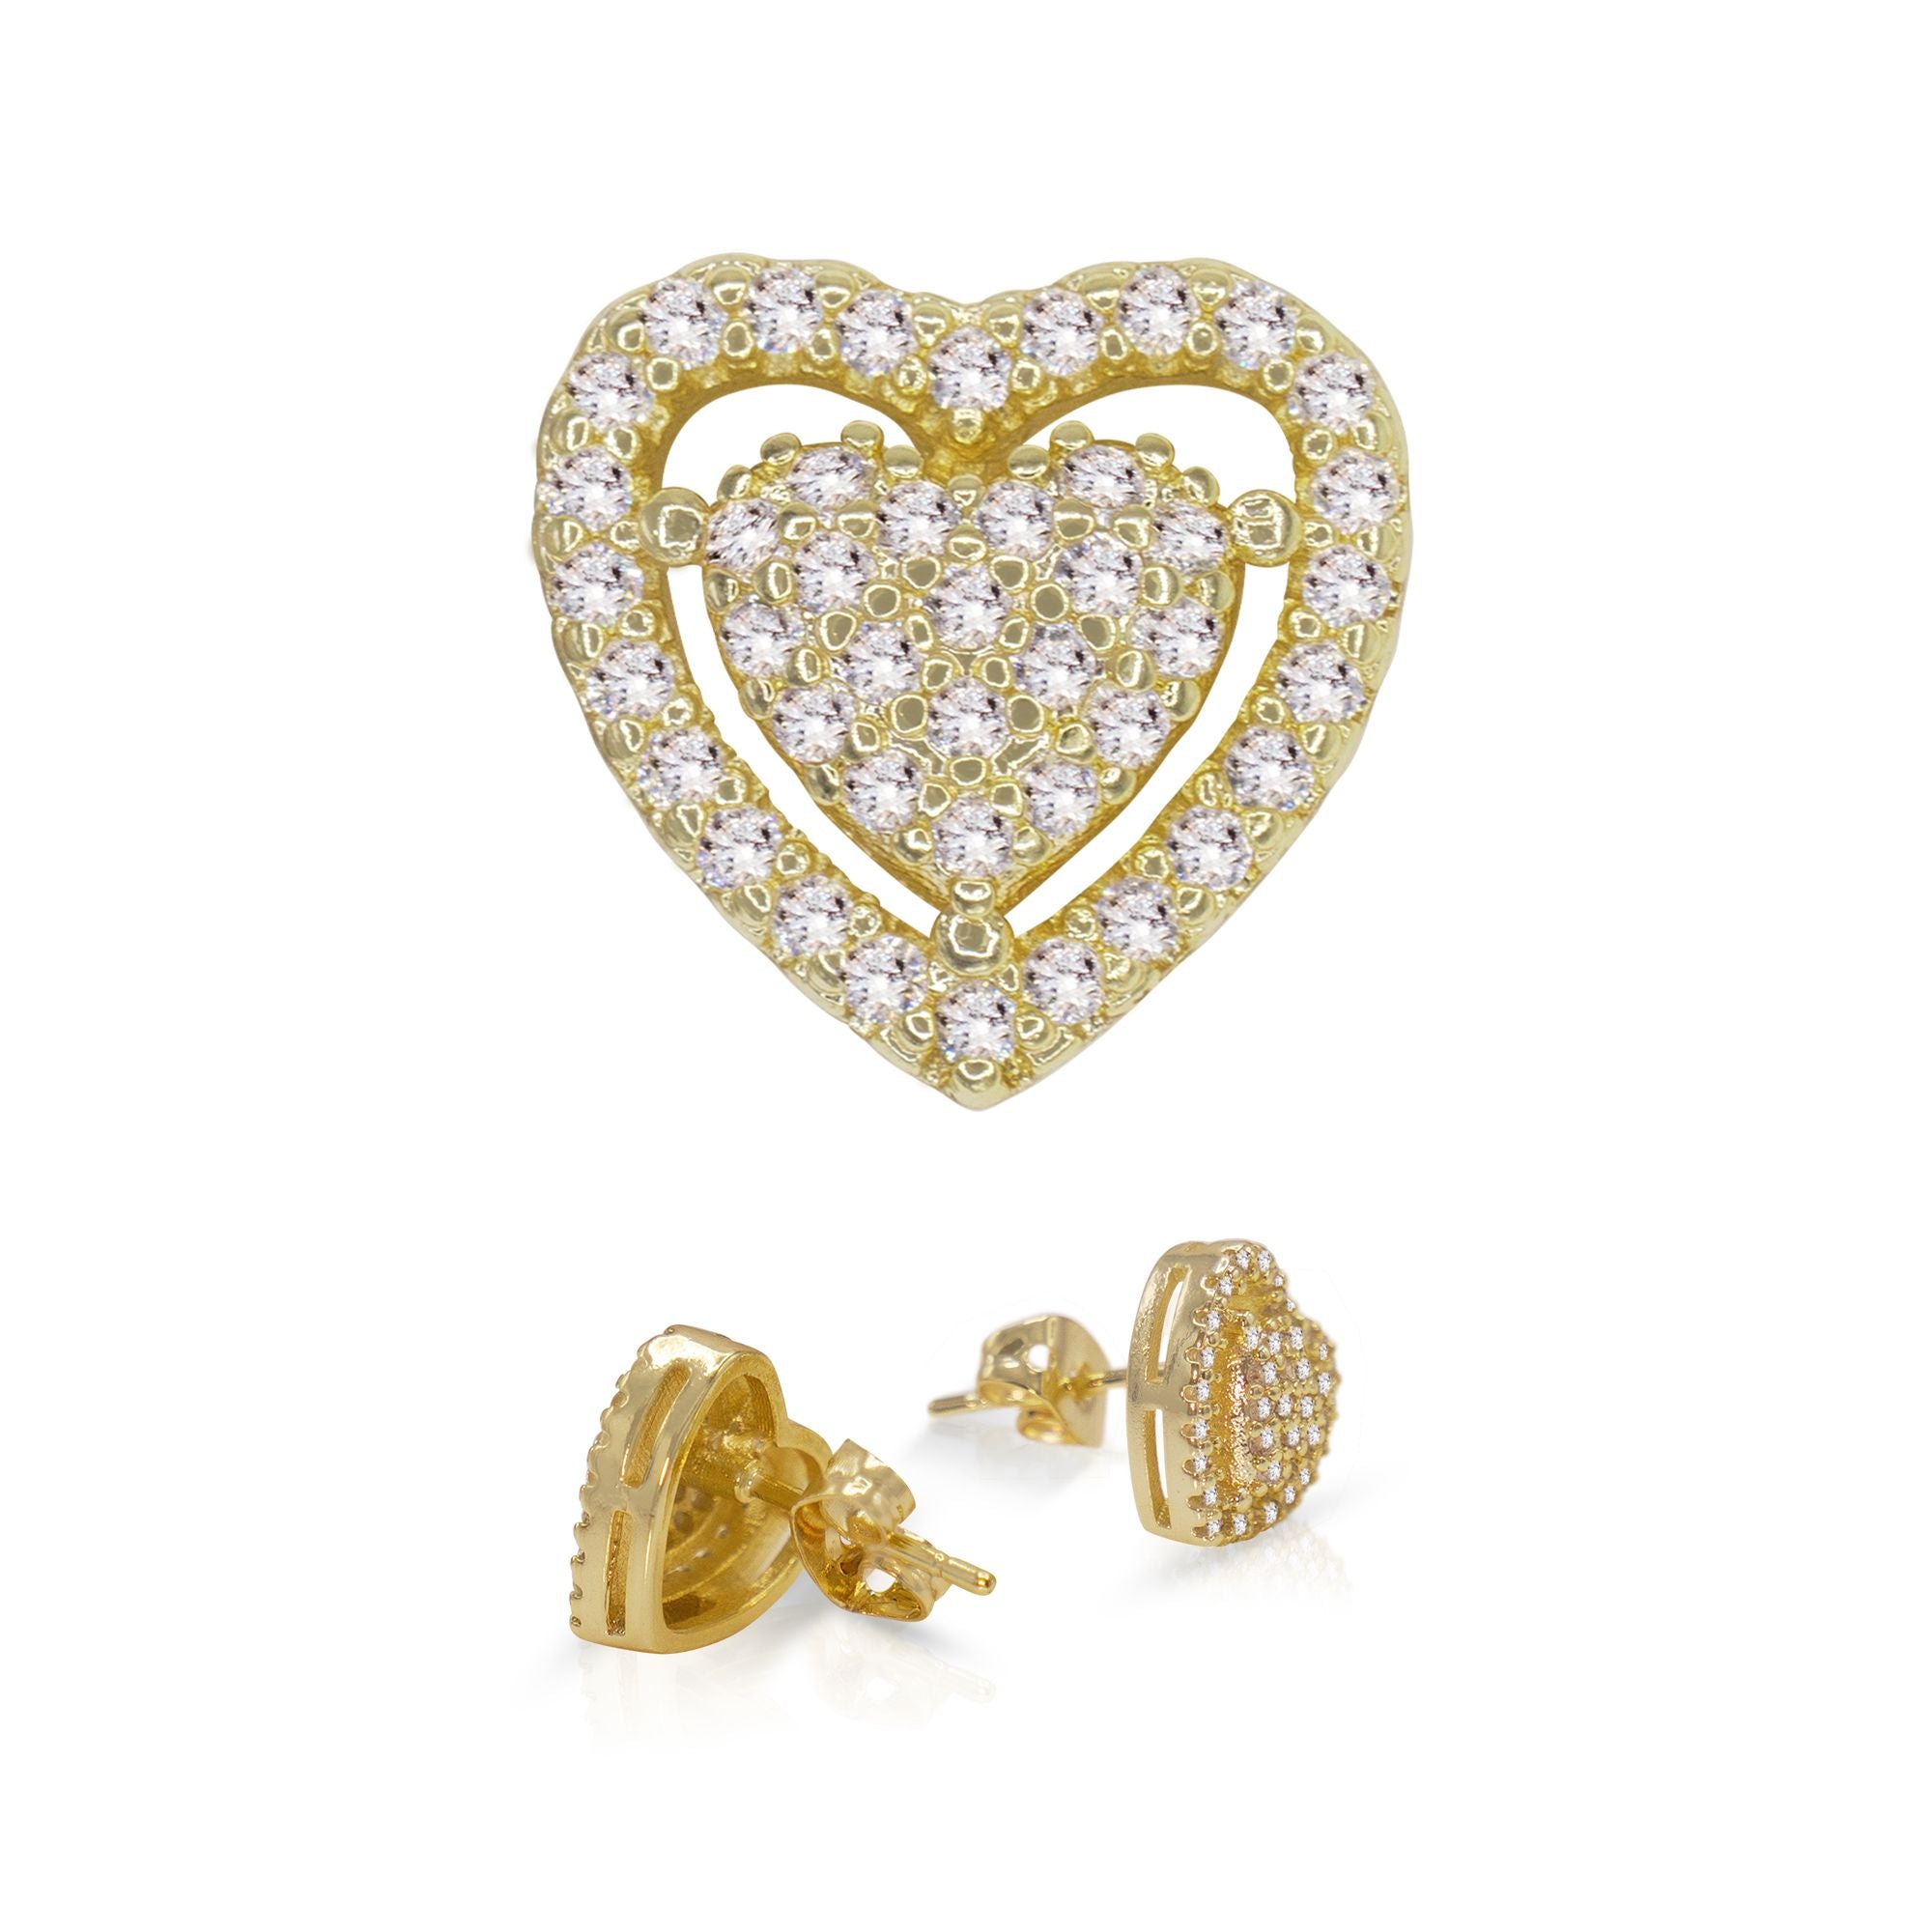 Beberlini Heart 14K Gold Filled Earrings Cubic Zirconia Hip Hop Studs Ear Piercing Fashion Jewelry Women 11mm, Women's, Size: Small